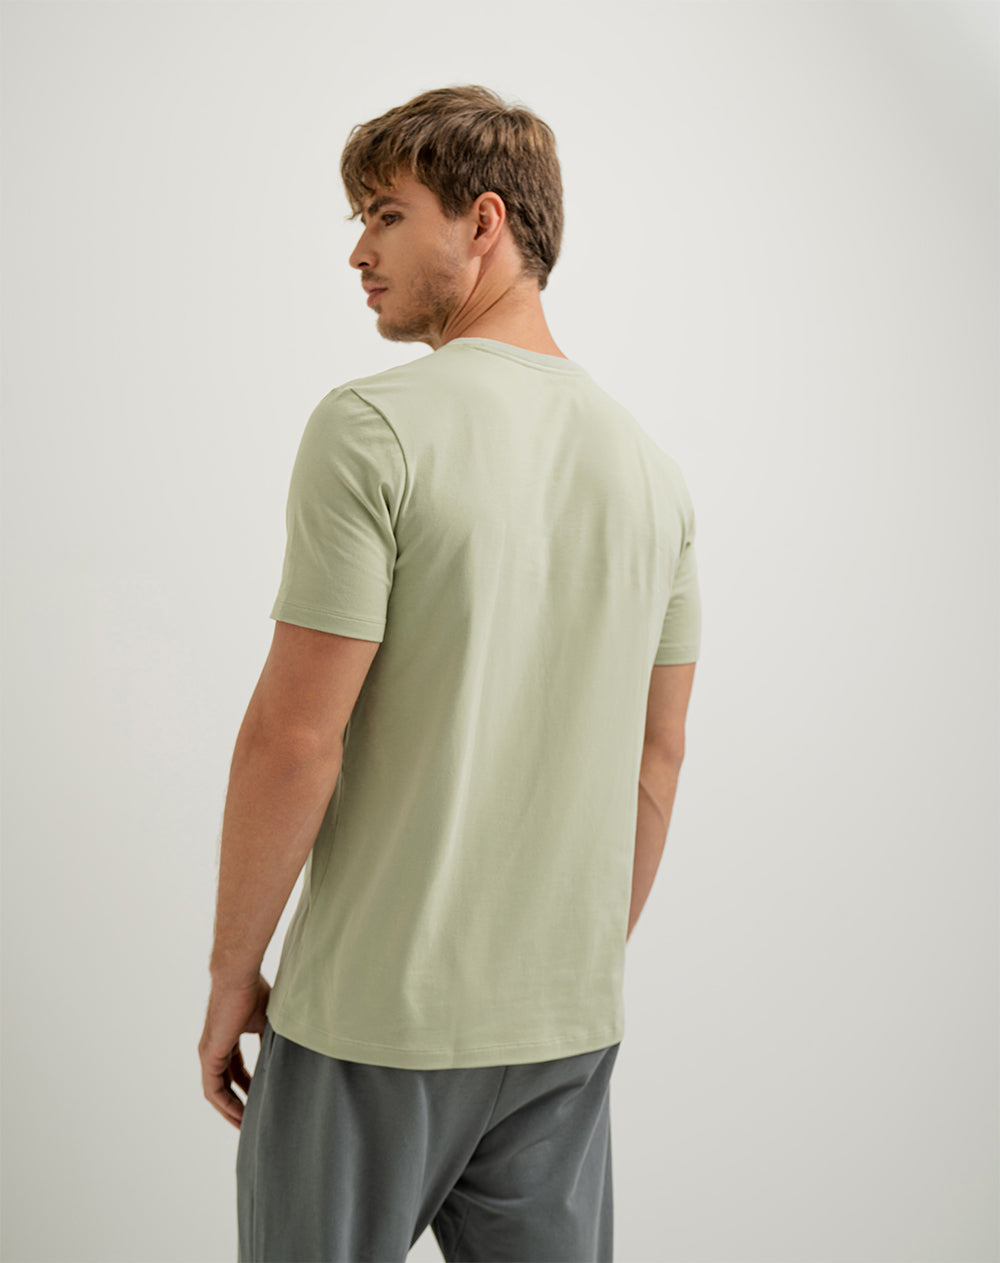 Camiseta slim fit manga corta verde